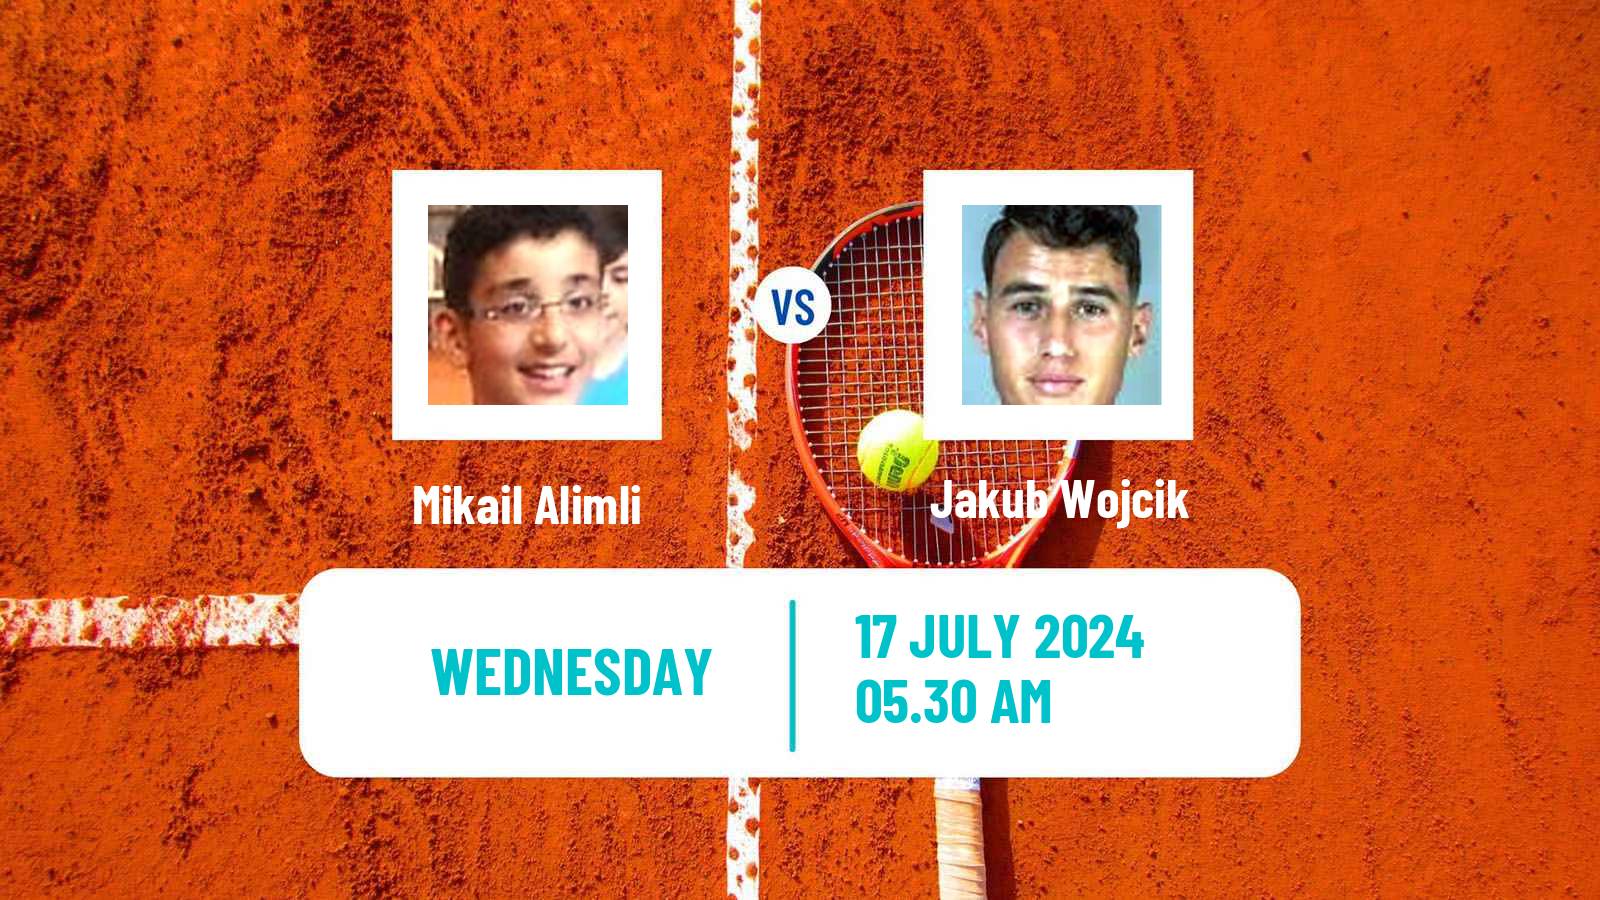 Tennis ITF M25 Esch Alzette 2 Men Mikail Alimli - Jakub Wojcik